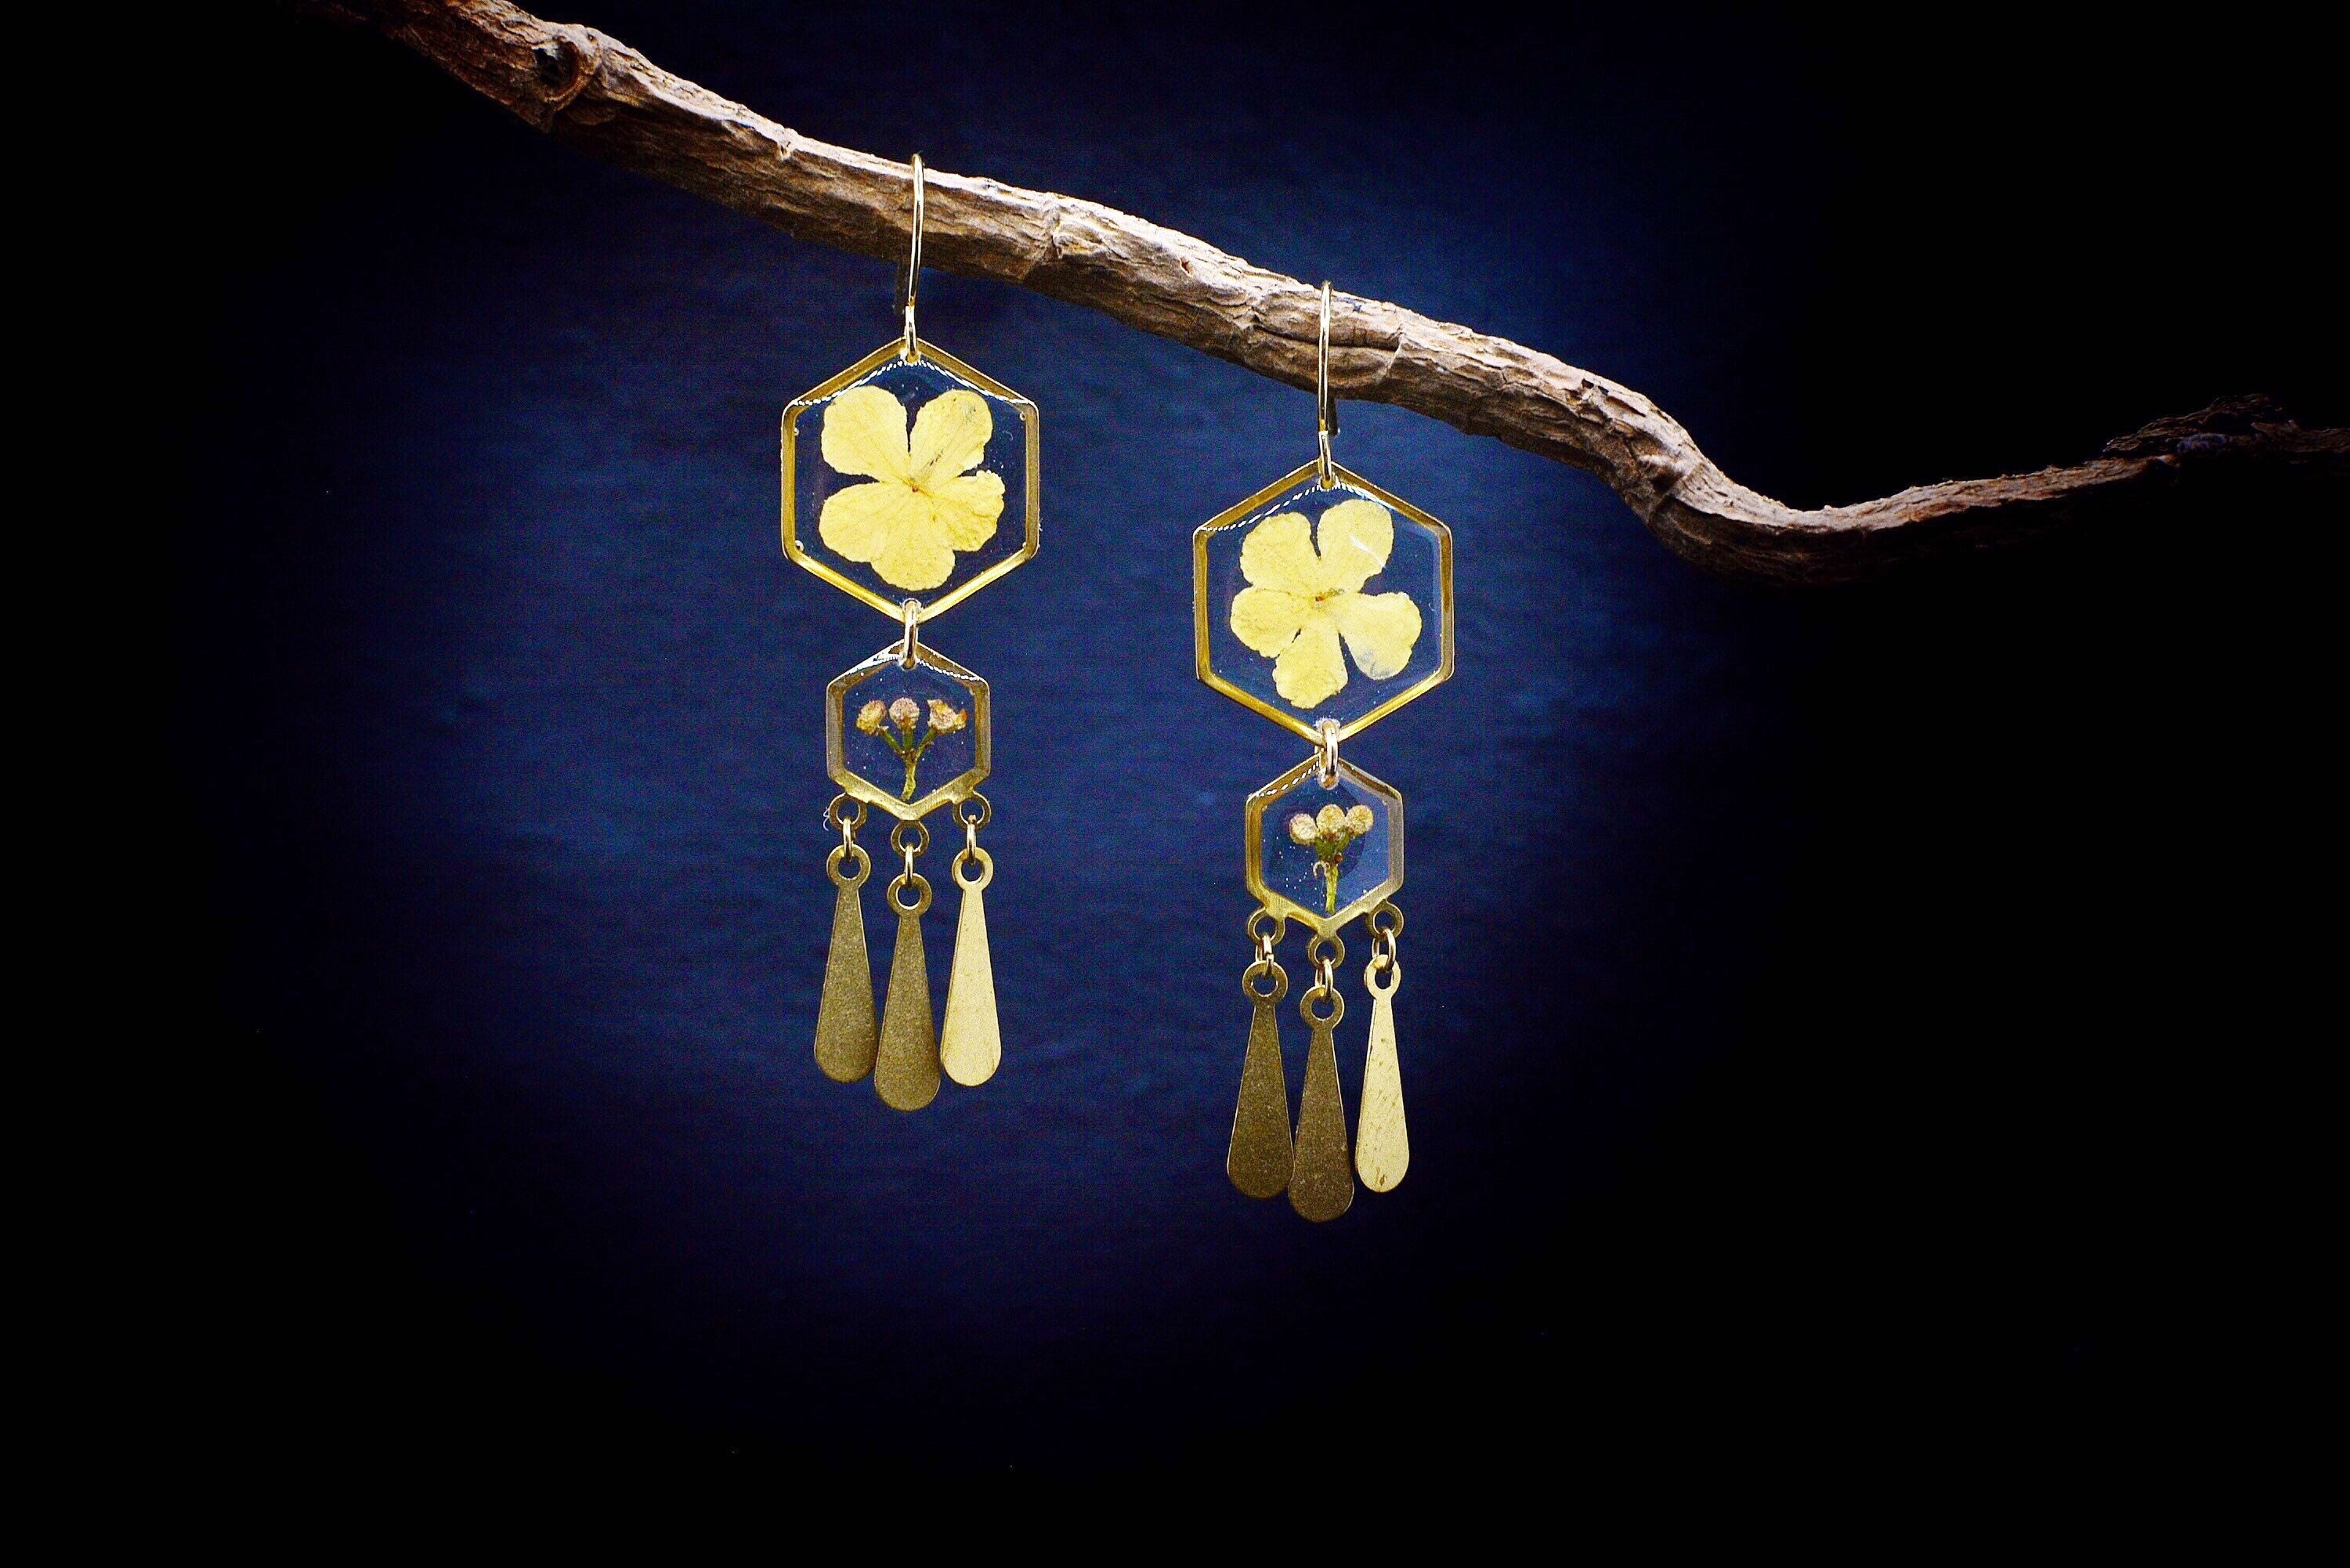 Pressed Flower Earrings/Dangle Drop Earrings/Hexagon Geometric Jewelry/